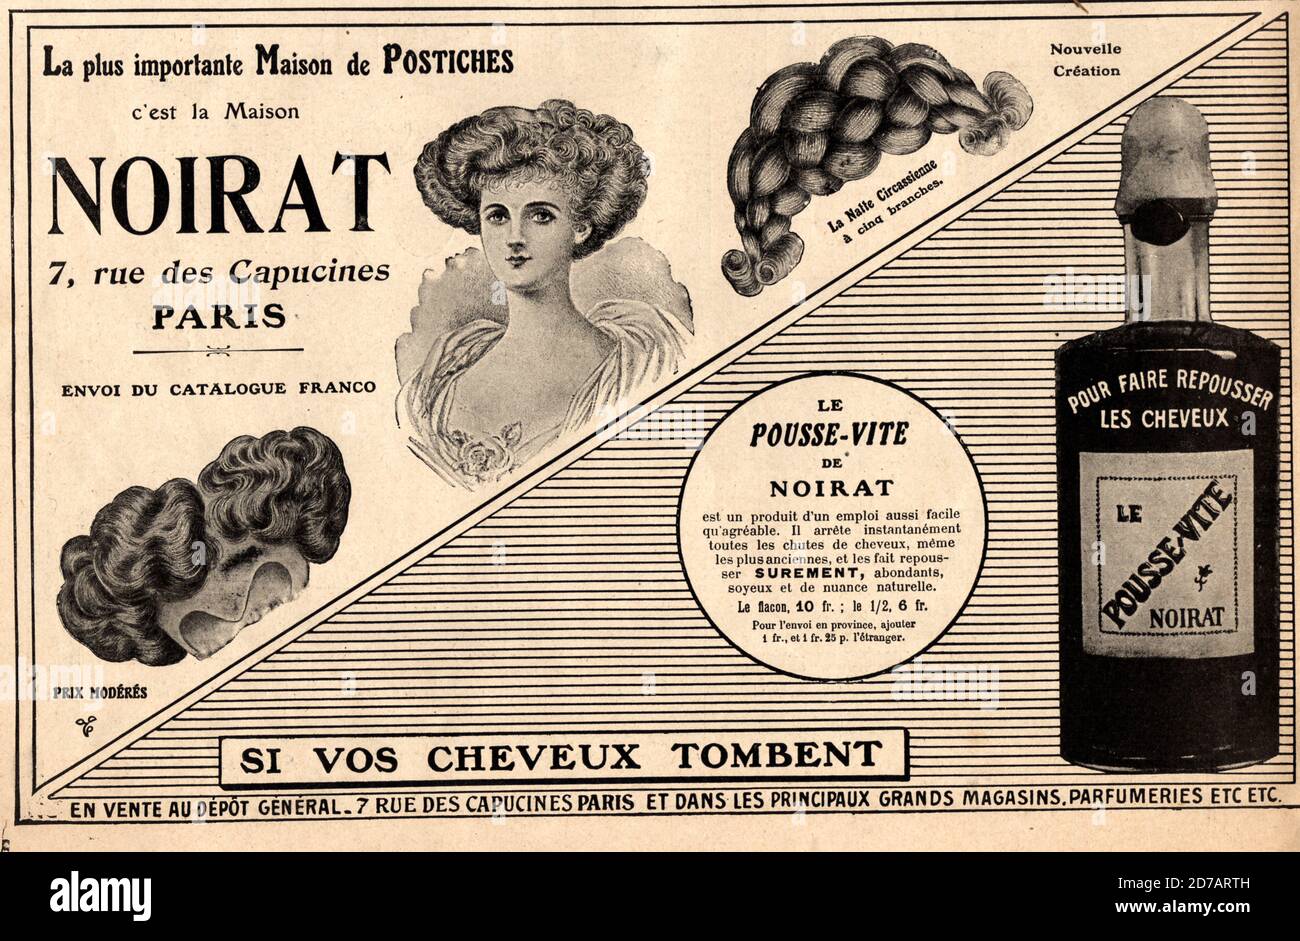 Publicite de presse pour une boutique de vetement a Saint Germain des Pres 1910 Foto Stock